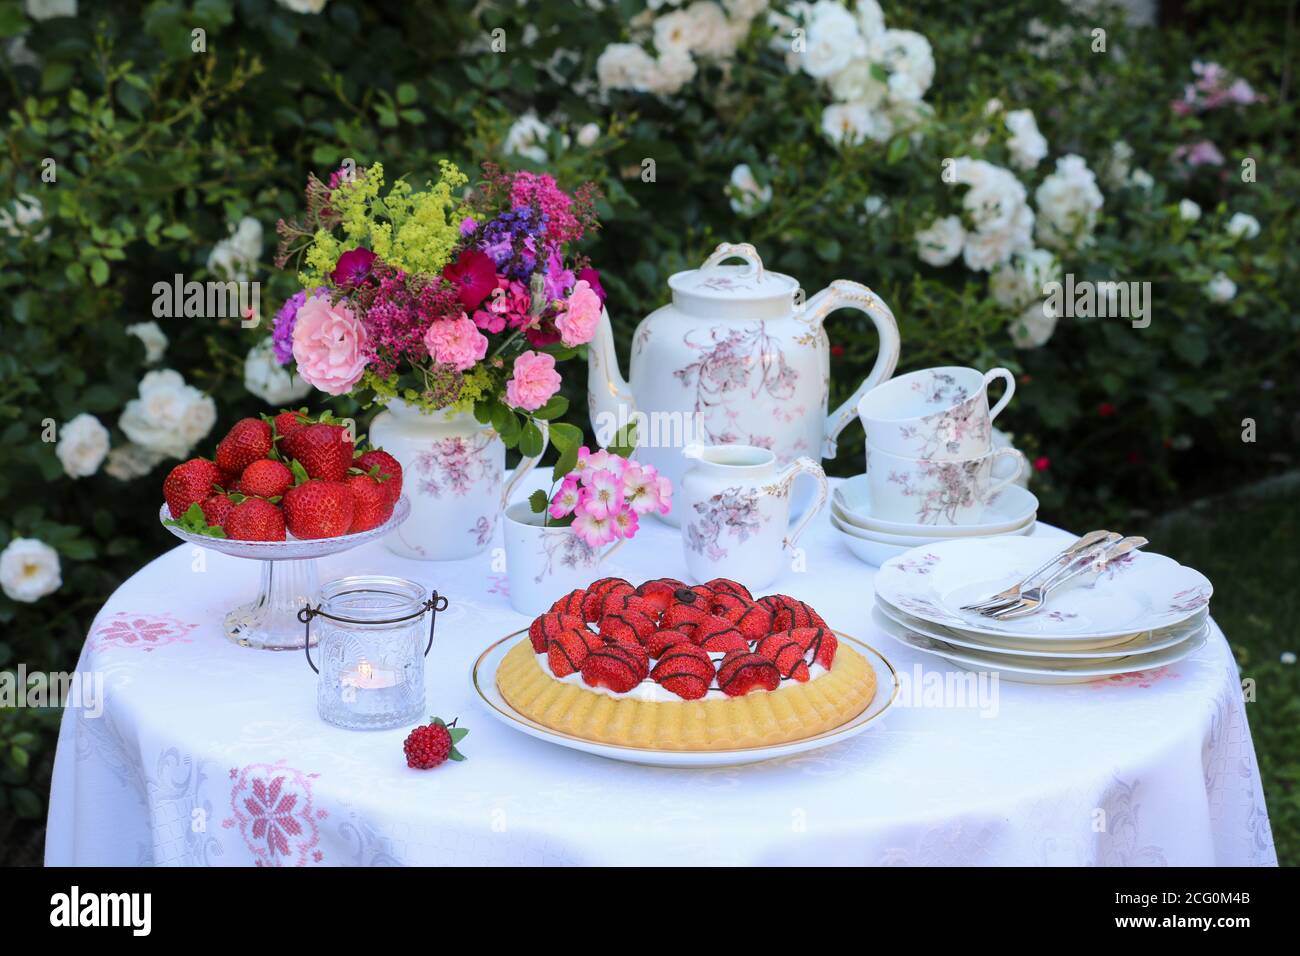 Tischdekoration mit Erdbeerkuchen, Vintage Porzellan und Blumenstrauß Stockfoto